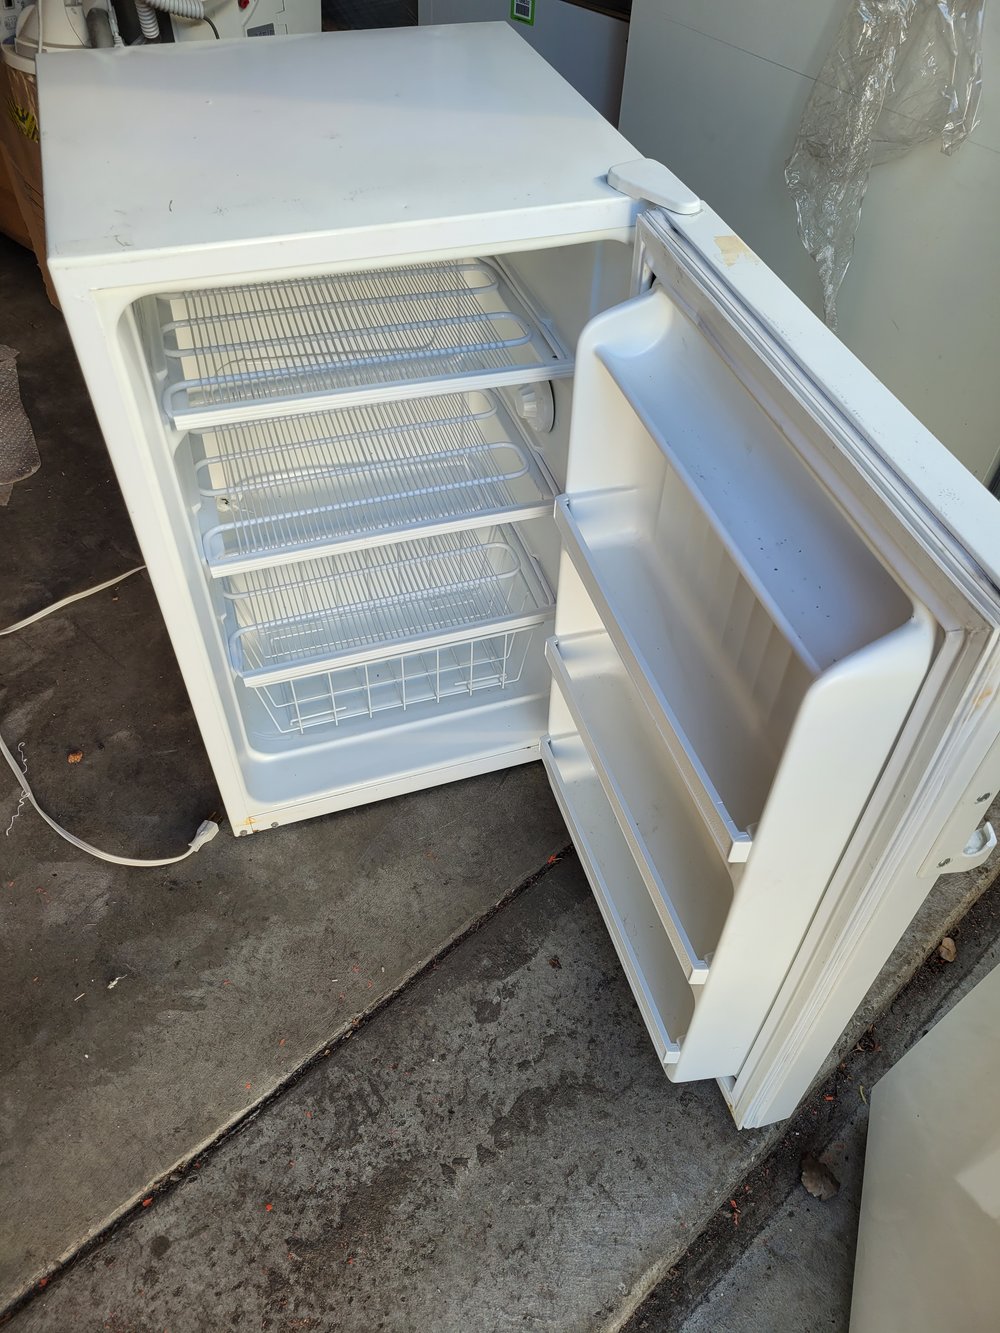 Fisher Scientific Isotemp™ Undercounter Storage Freezer — Knowble Scientific